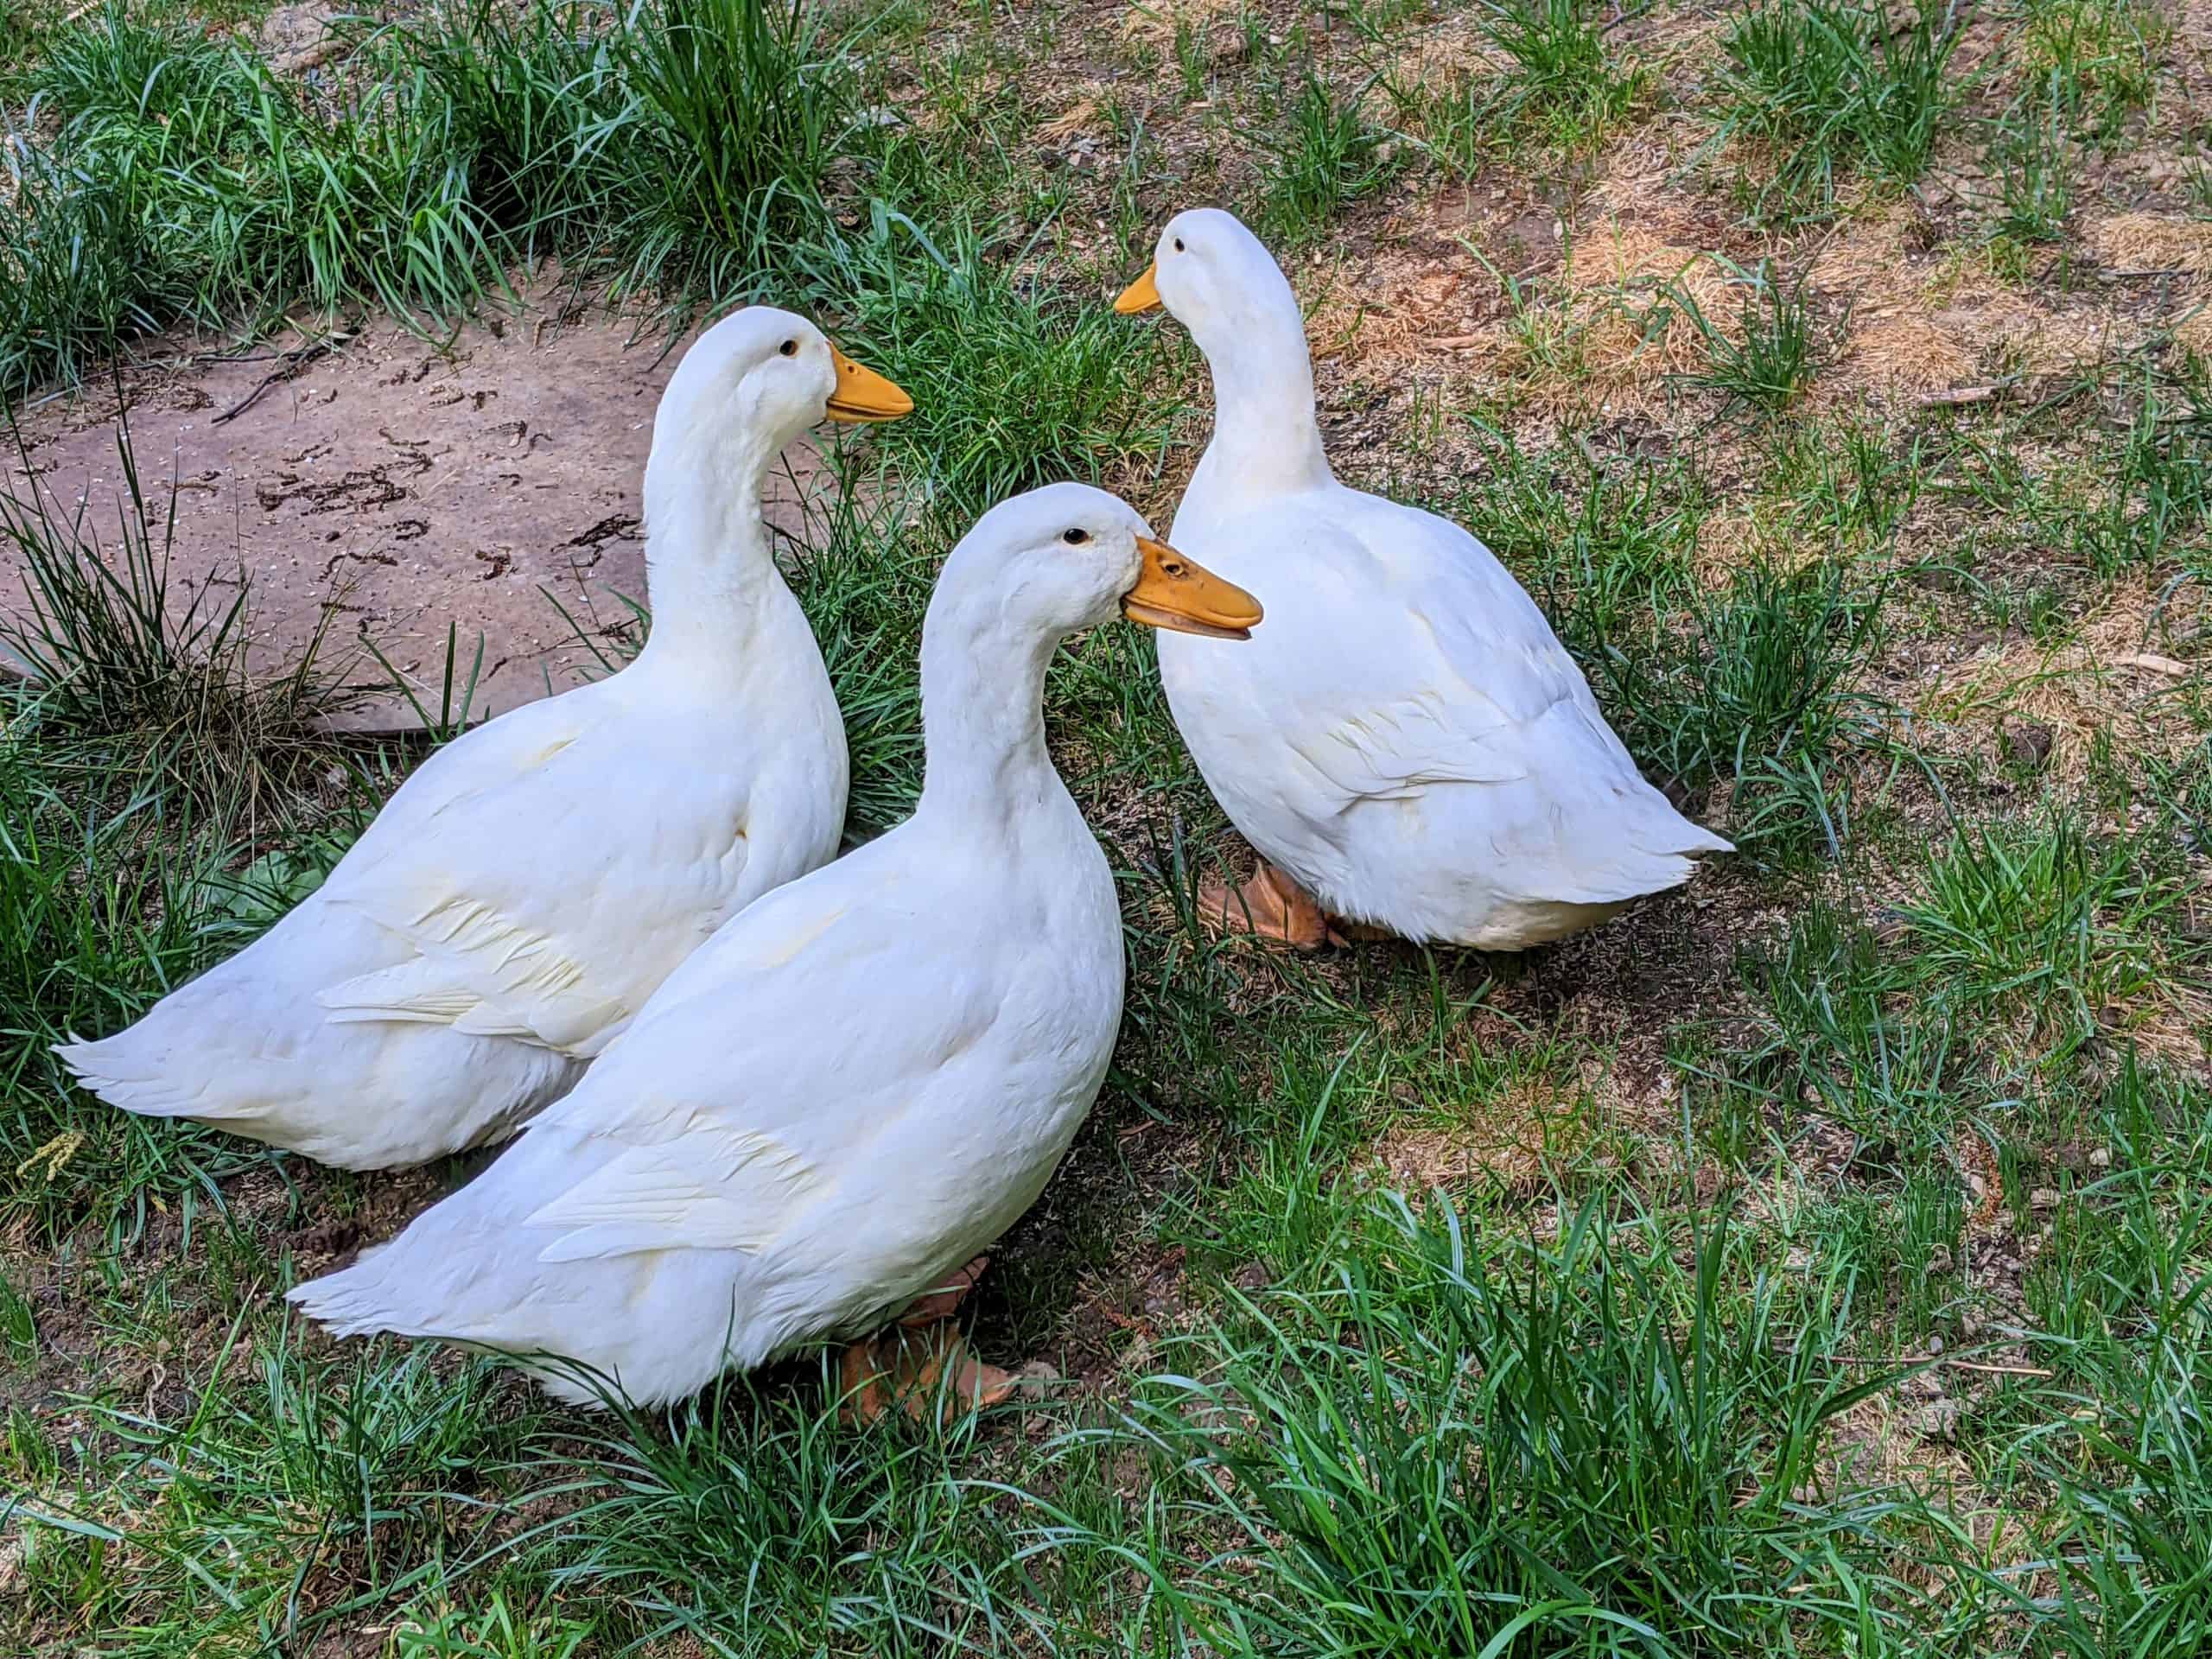 three white pekin ducks in the grass